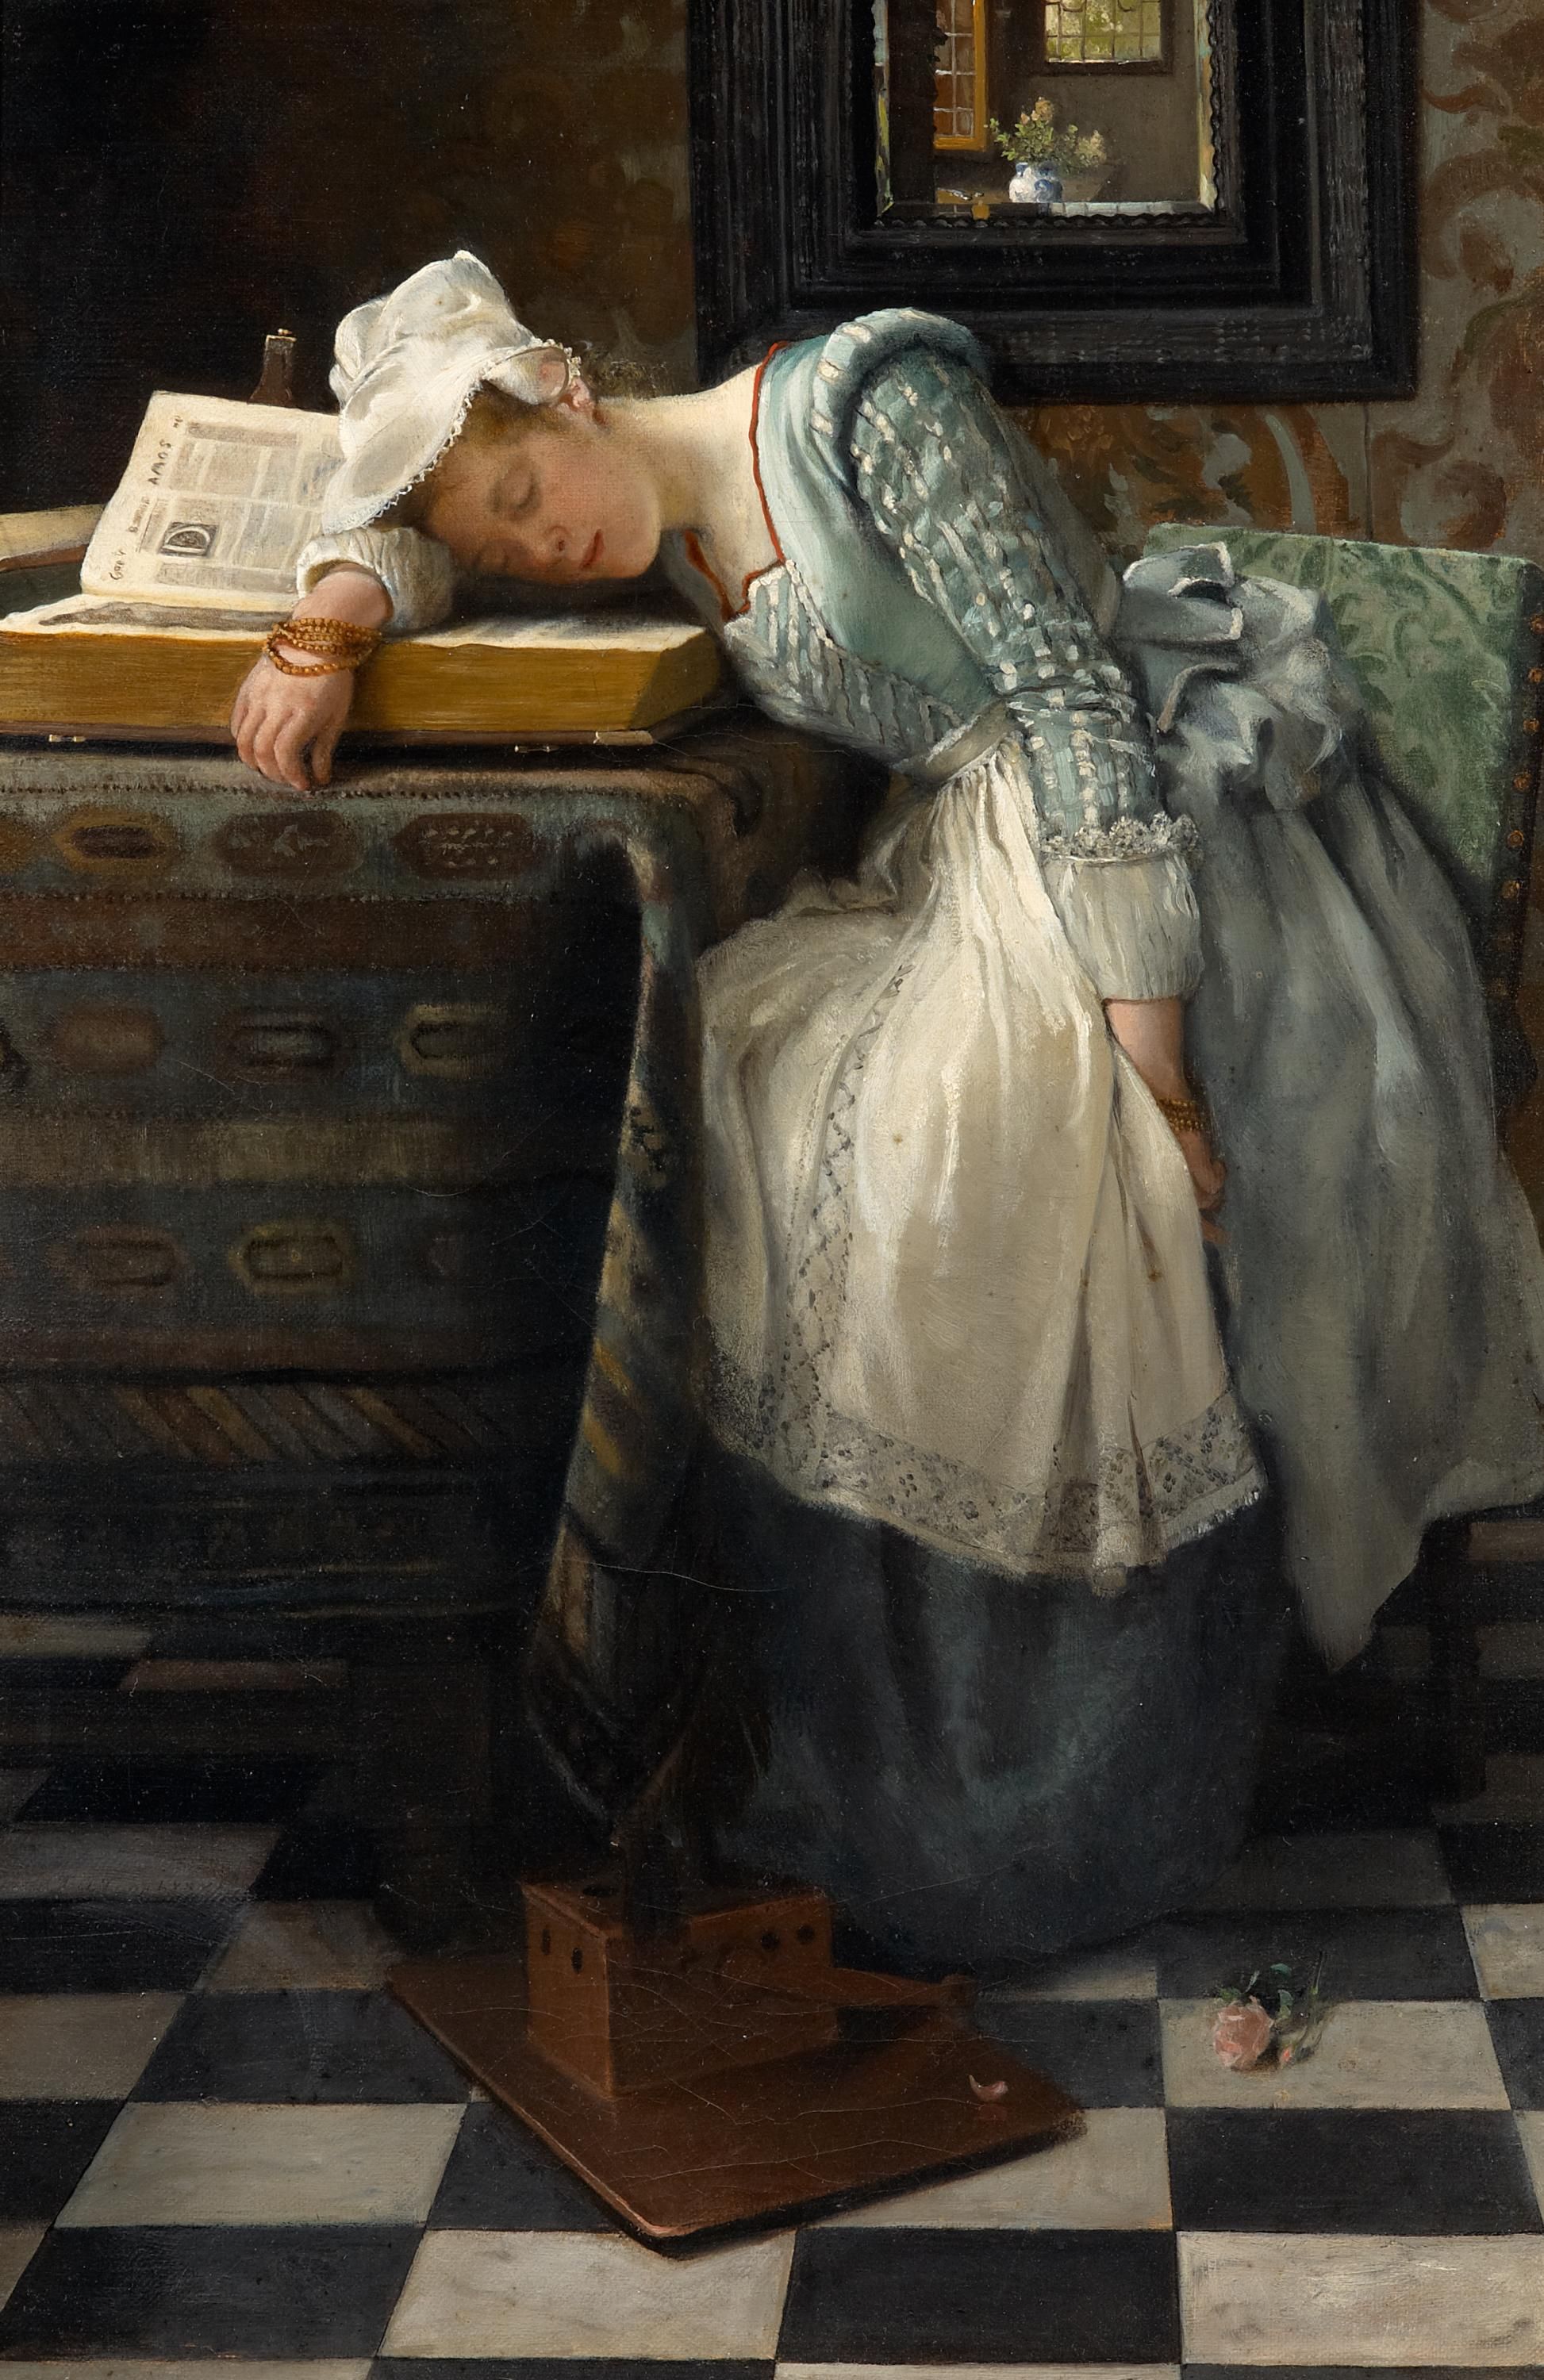 Mundo de sueños by Laura Theresa Alma Tadema - 1876 - 46 x 31 cm Colección privada